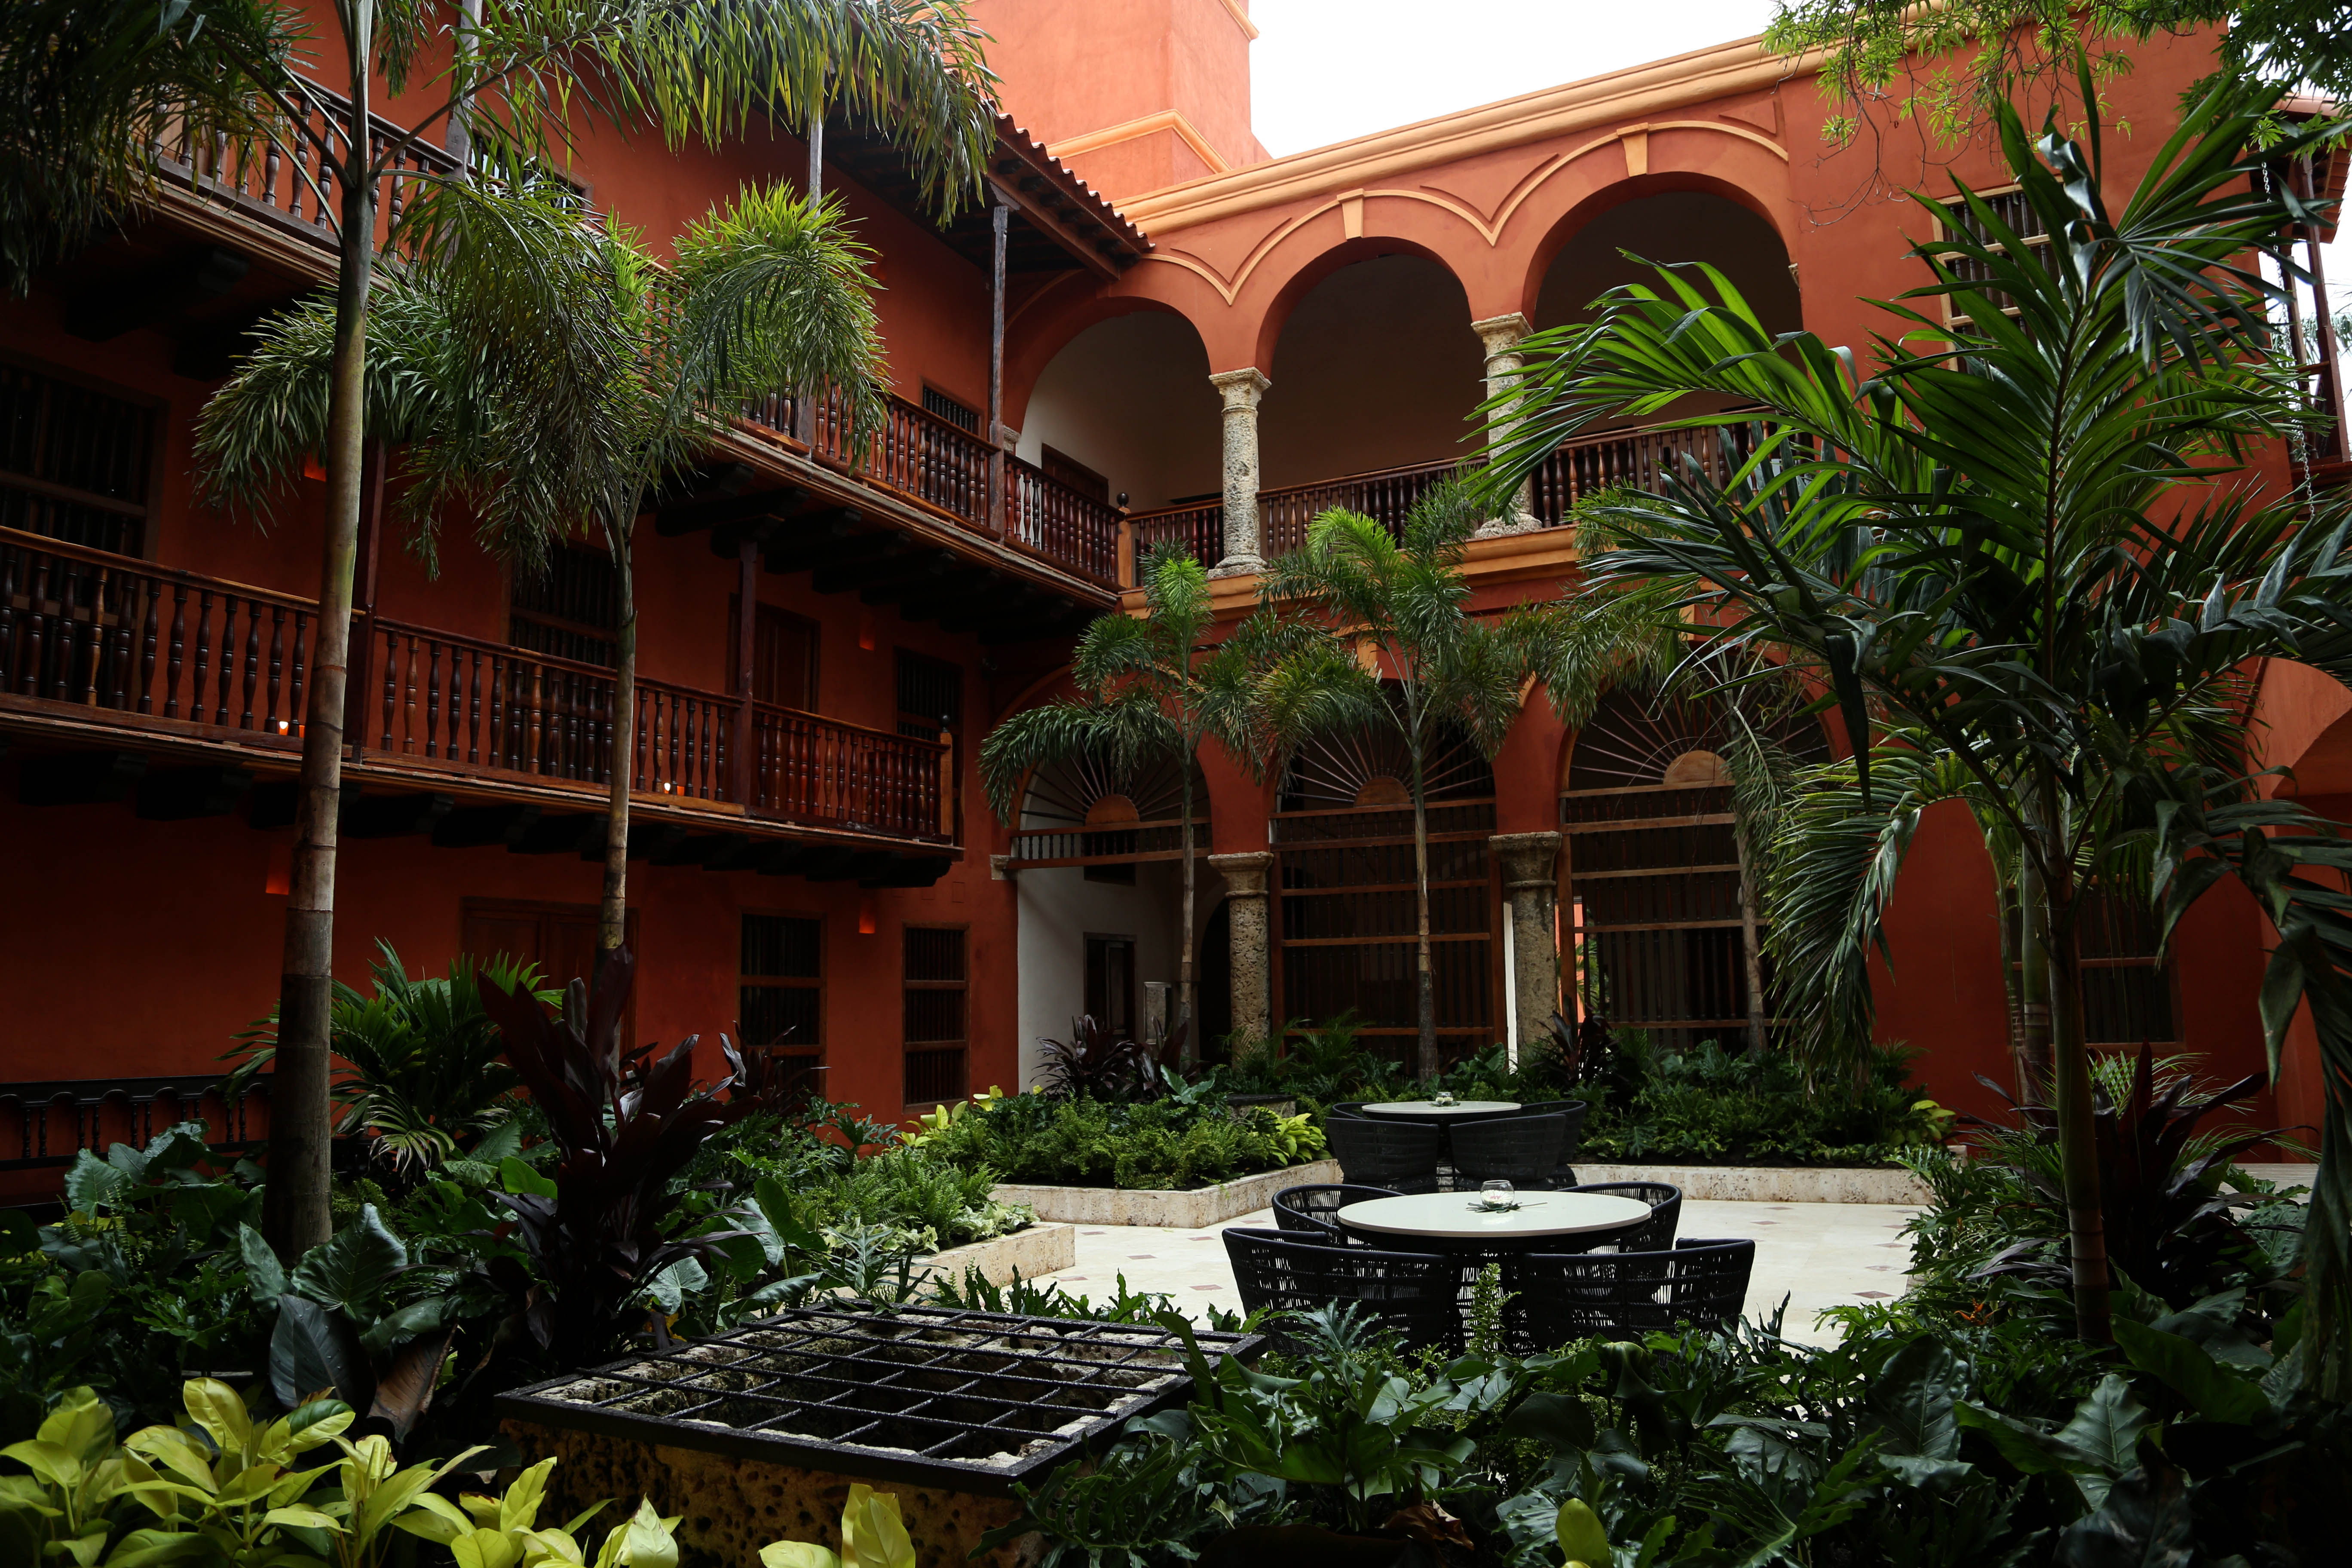 Casa del Marqués, sede alterna de la Cancillería en Cartagena, es catalogada por CNN es español como uno de los encantos arquitectónicos de la ciudad